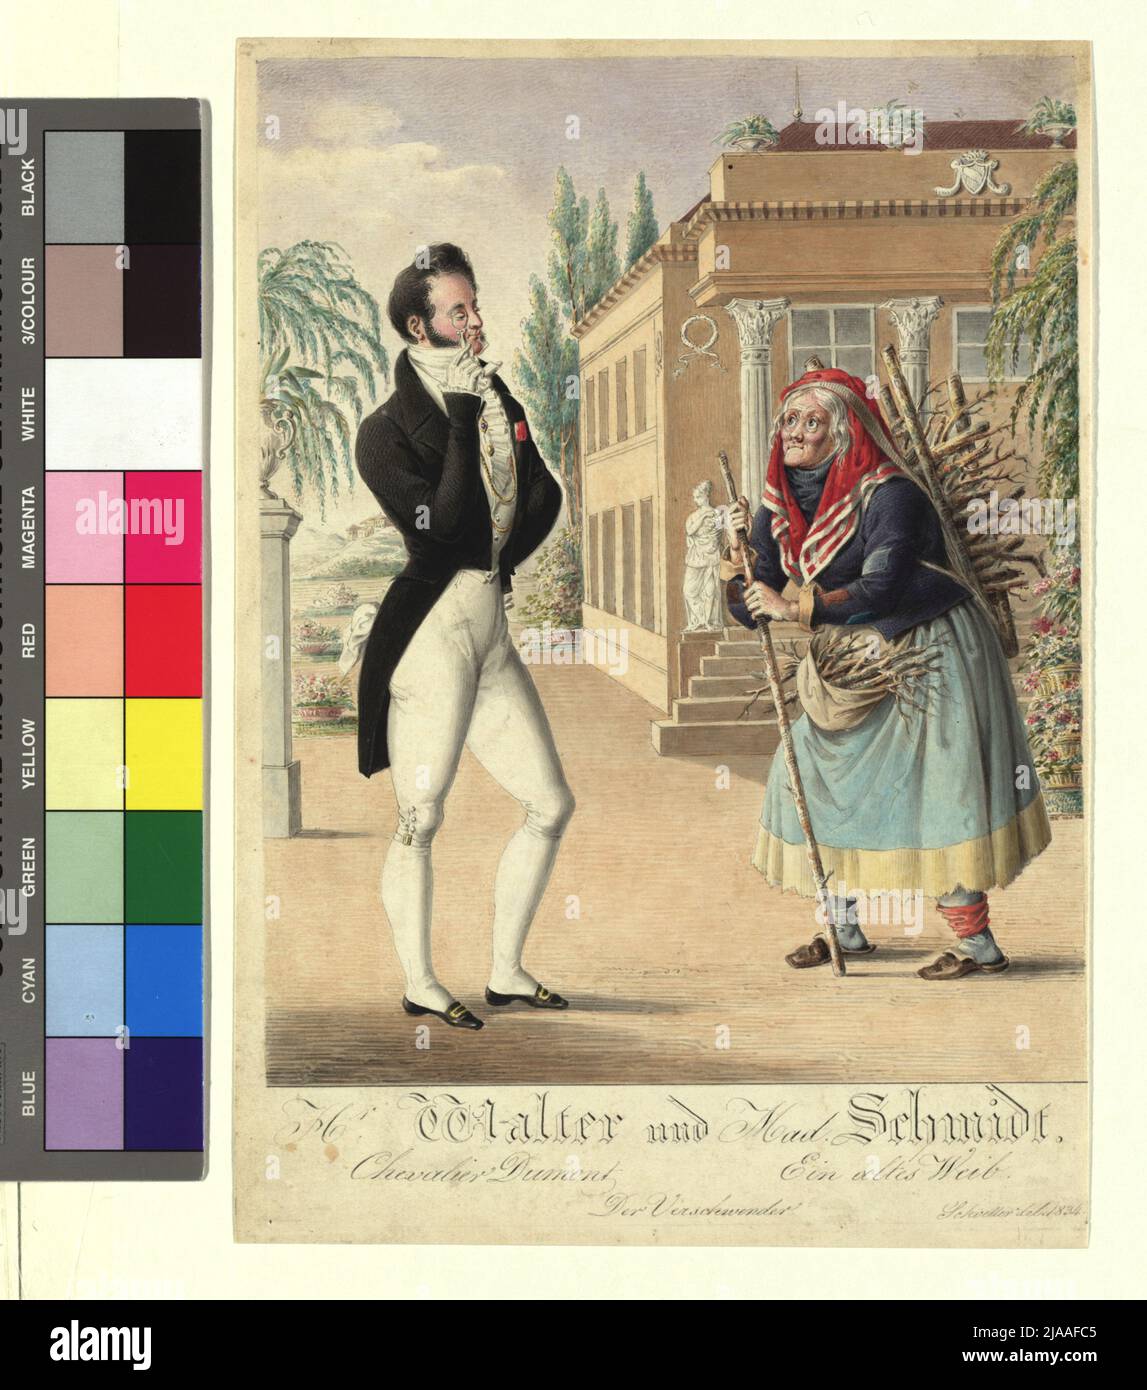 Herr Walter und Mad. Schmidt. Chevalier Dumont. Eine alte Frau. Der Verwaster '. Johann Christian Schoeller (1782-1851), Künstler Stockfoto